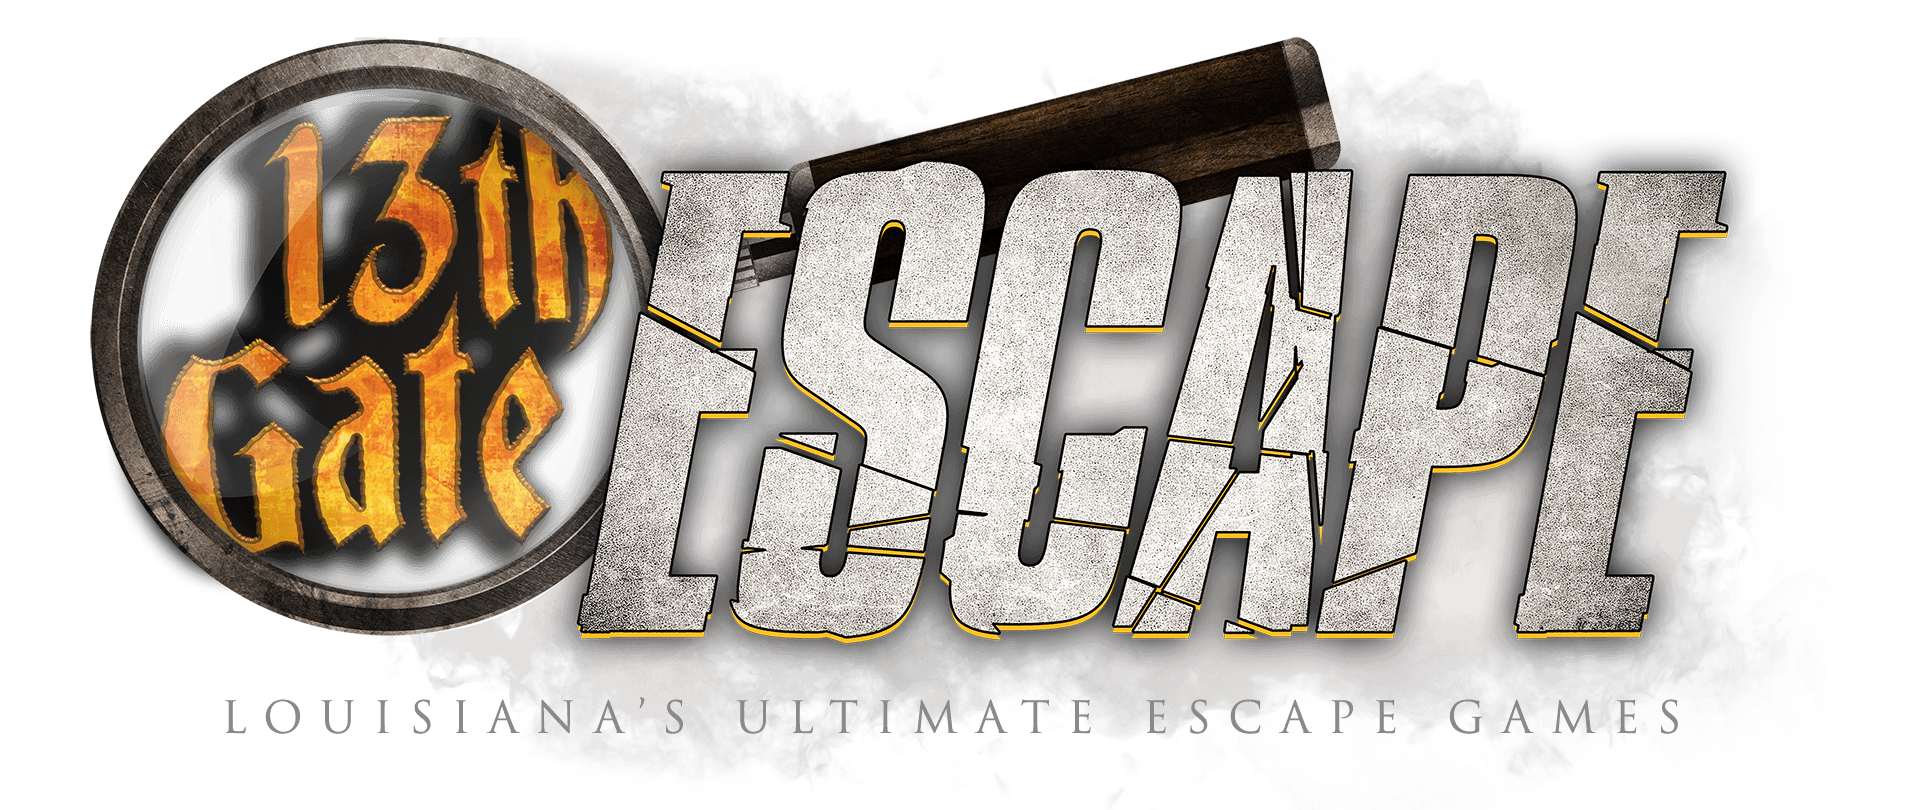 Louisiana S Ultimate Escape Games 13th Gate Escape You Have 60